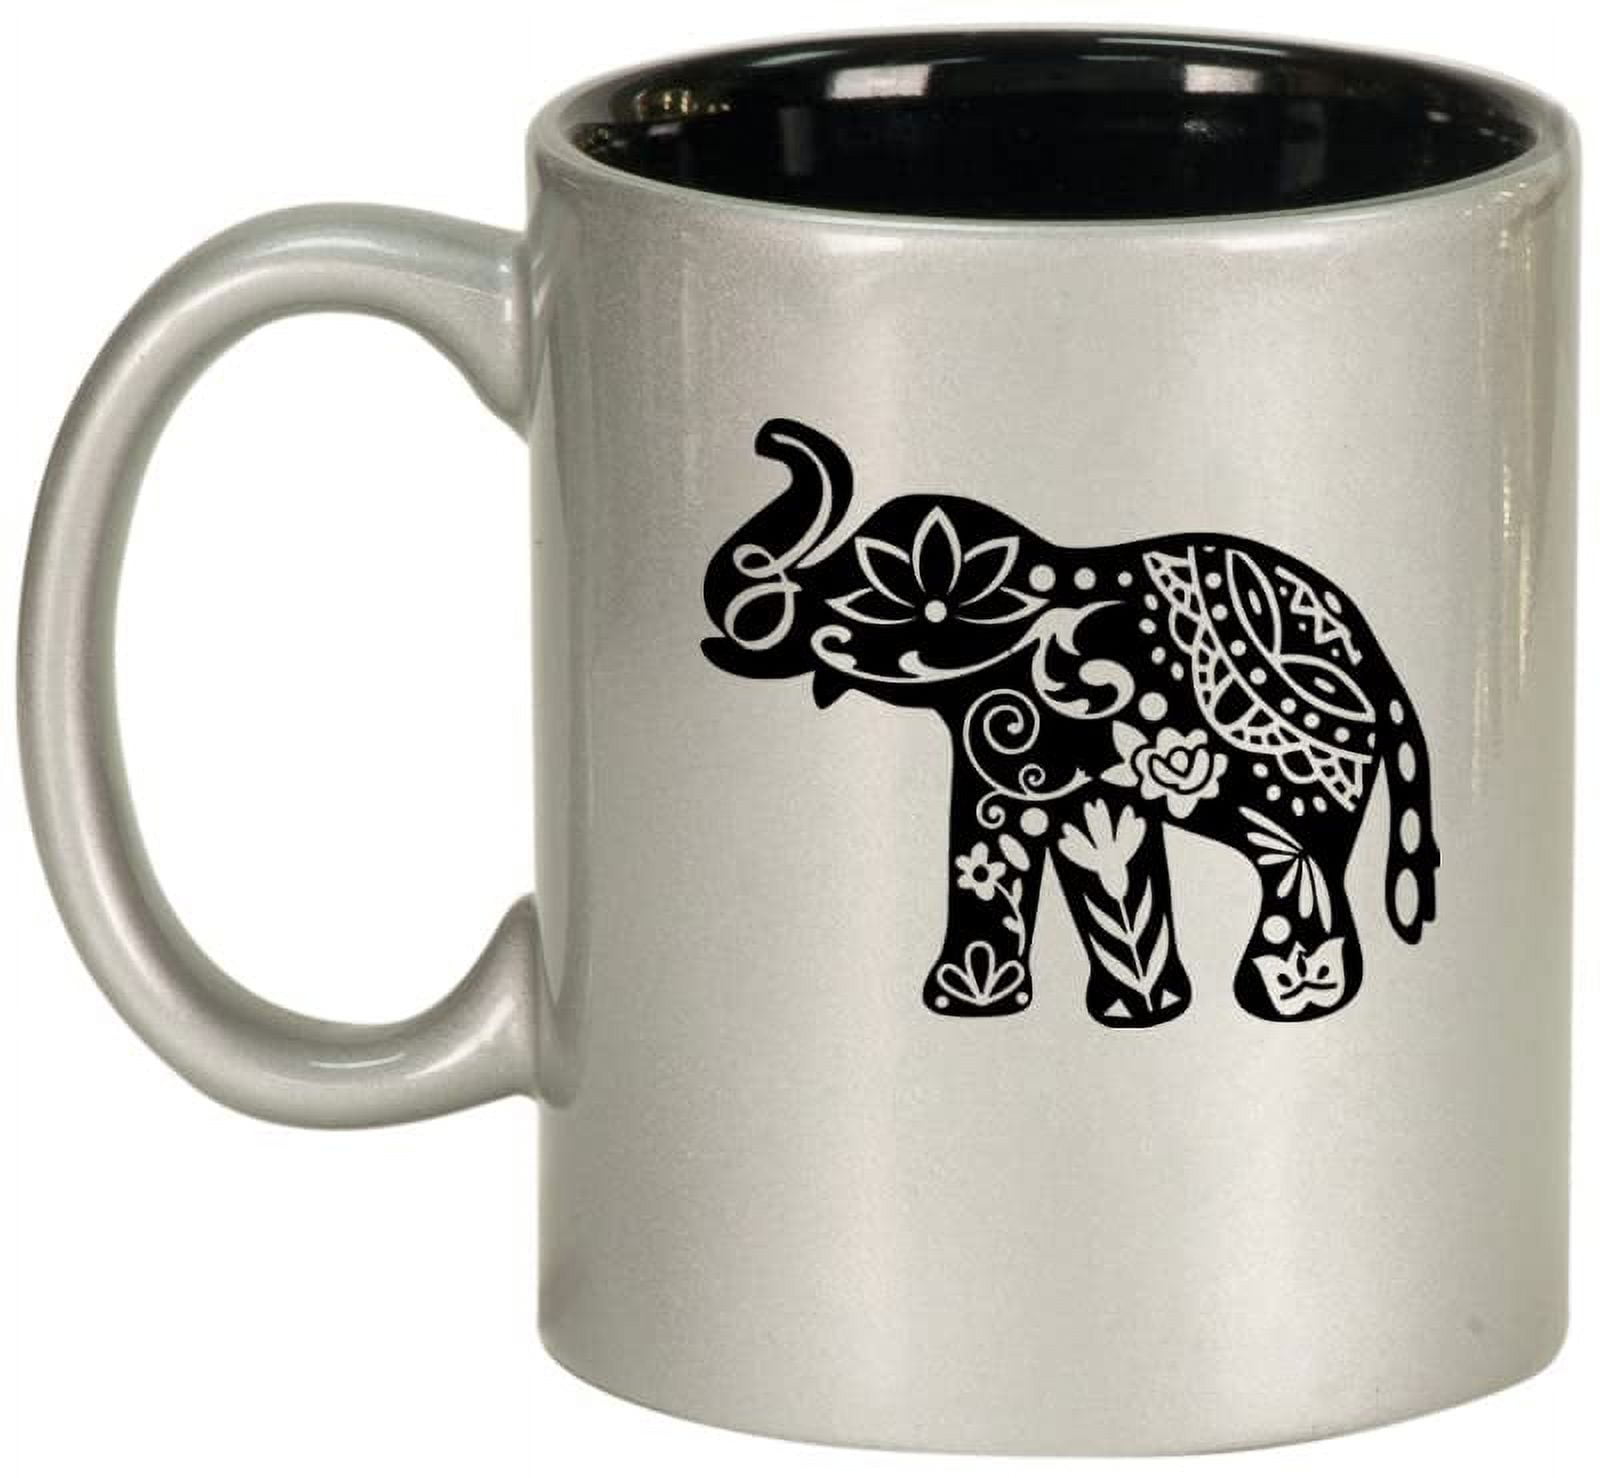  MyGift White Ceramic Unicorn Elephant Coffee Mug